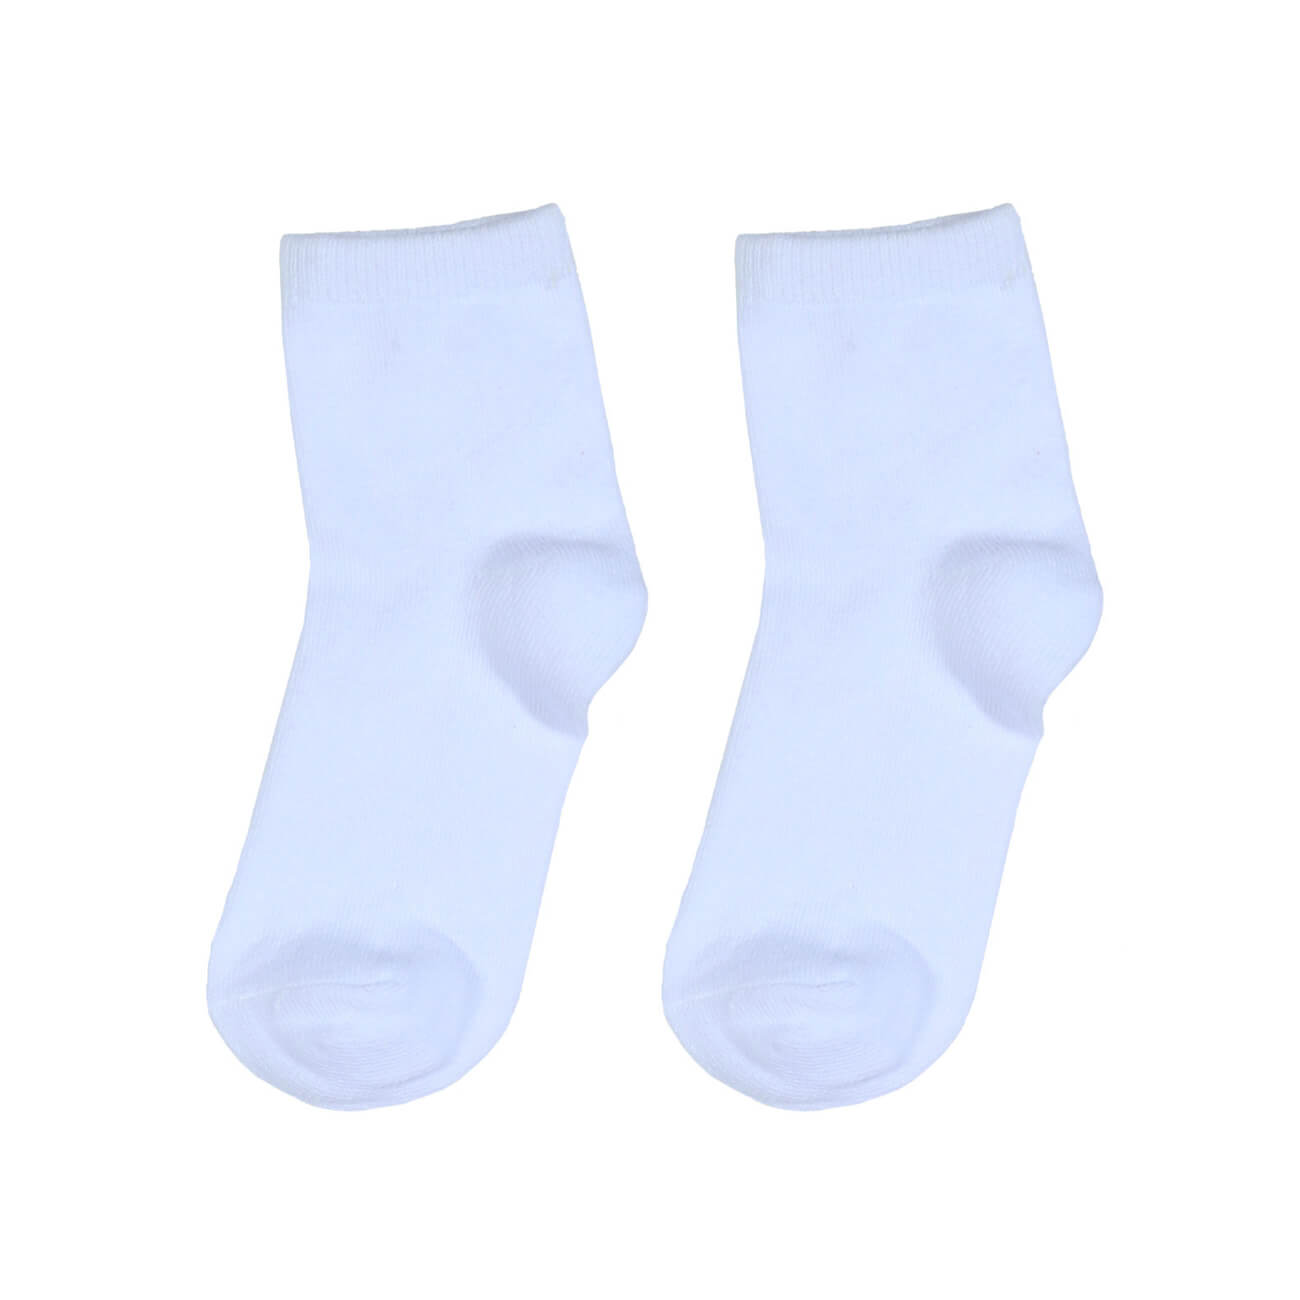 Носки детские, р. 23-26, хлопок/полиэстер, белые, Basic носки следки женские р 36 38 хлопок полиэстер белые basic